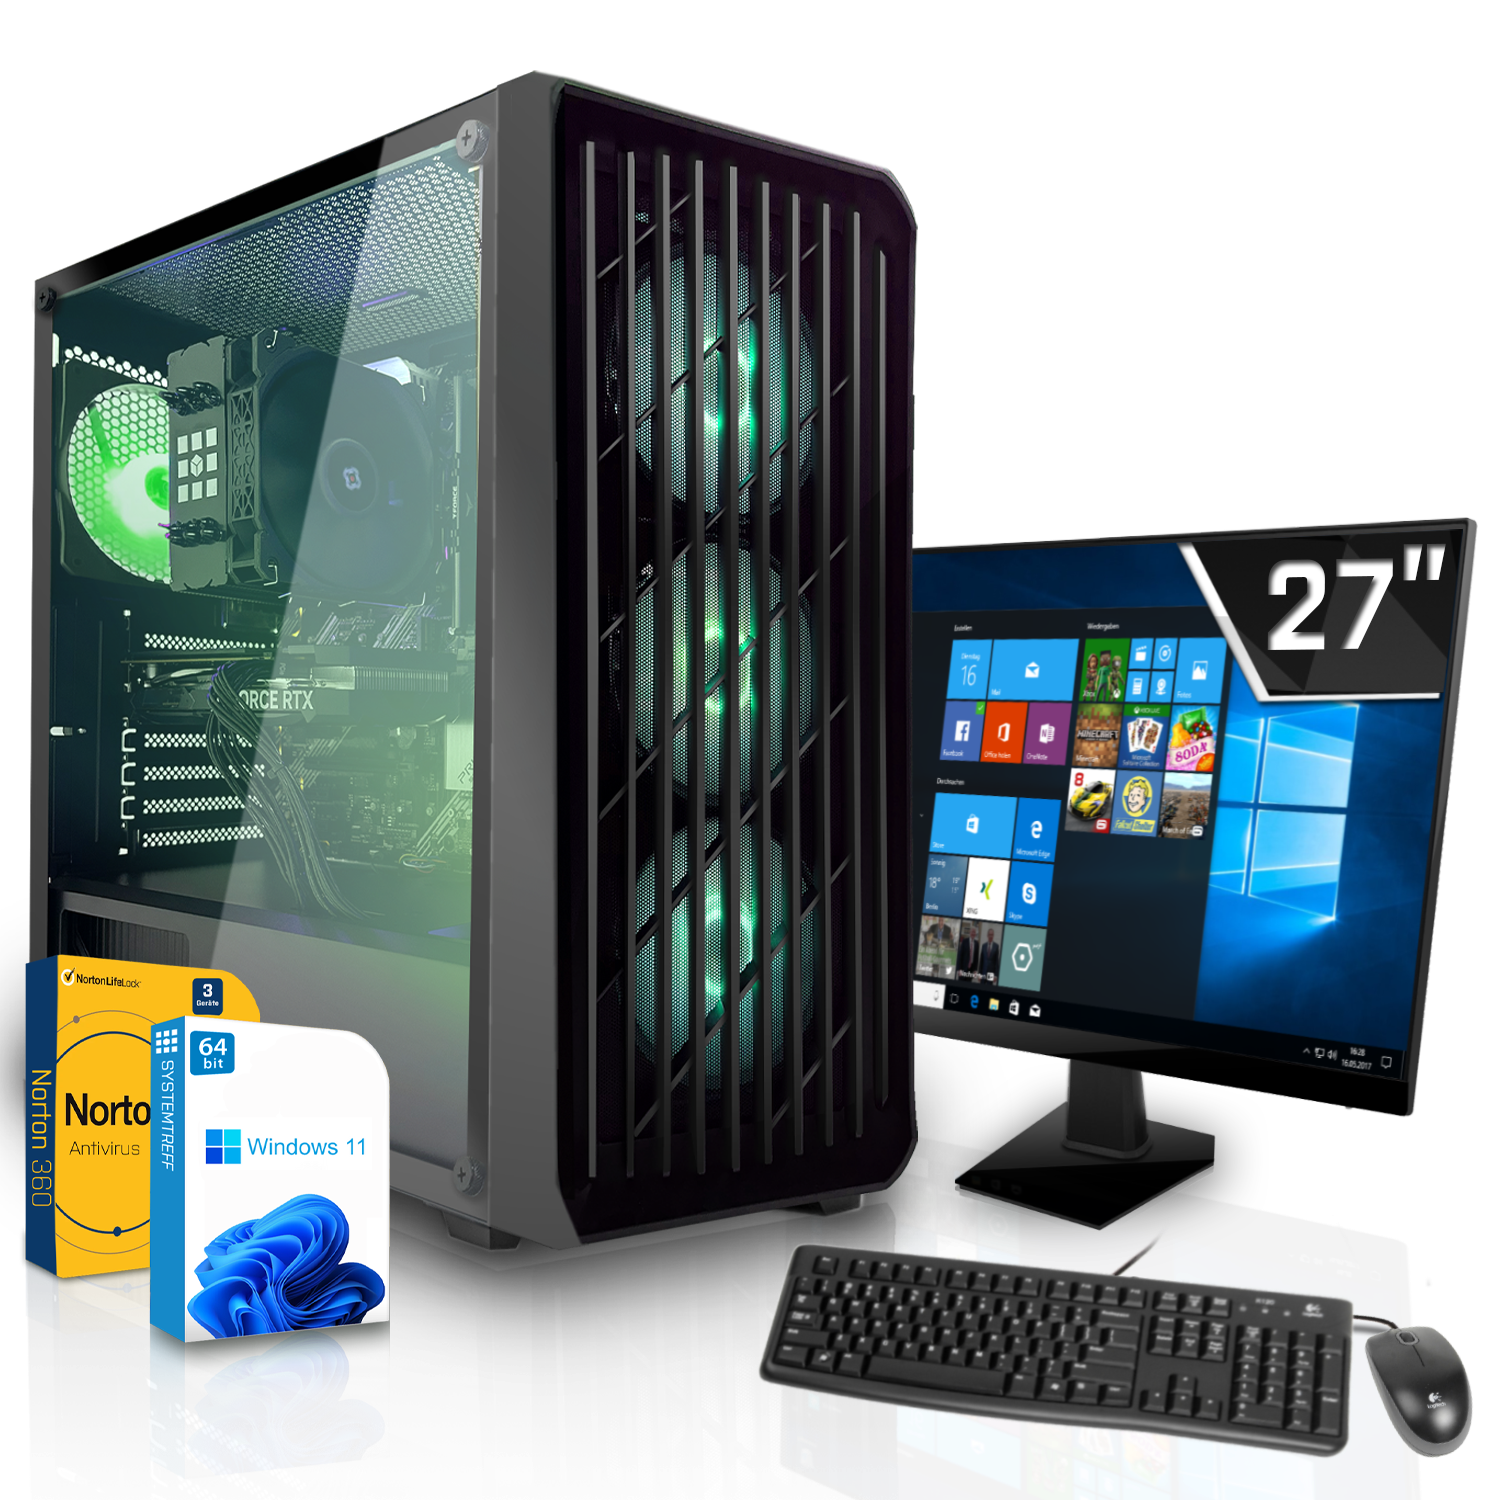 SYSTEMTREFF Gaming Komplett AMD mSSD, 5 Prozessor, 16 Ryzen 8 RX PC 8GB 6600 GB Komplett GB RAM, Radeon GDDR6, GB 1000 mit AMD 5600, 5600